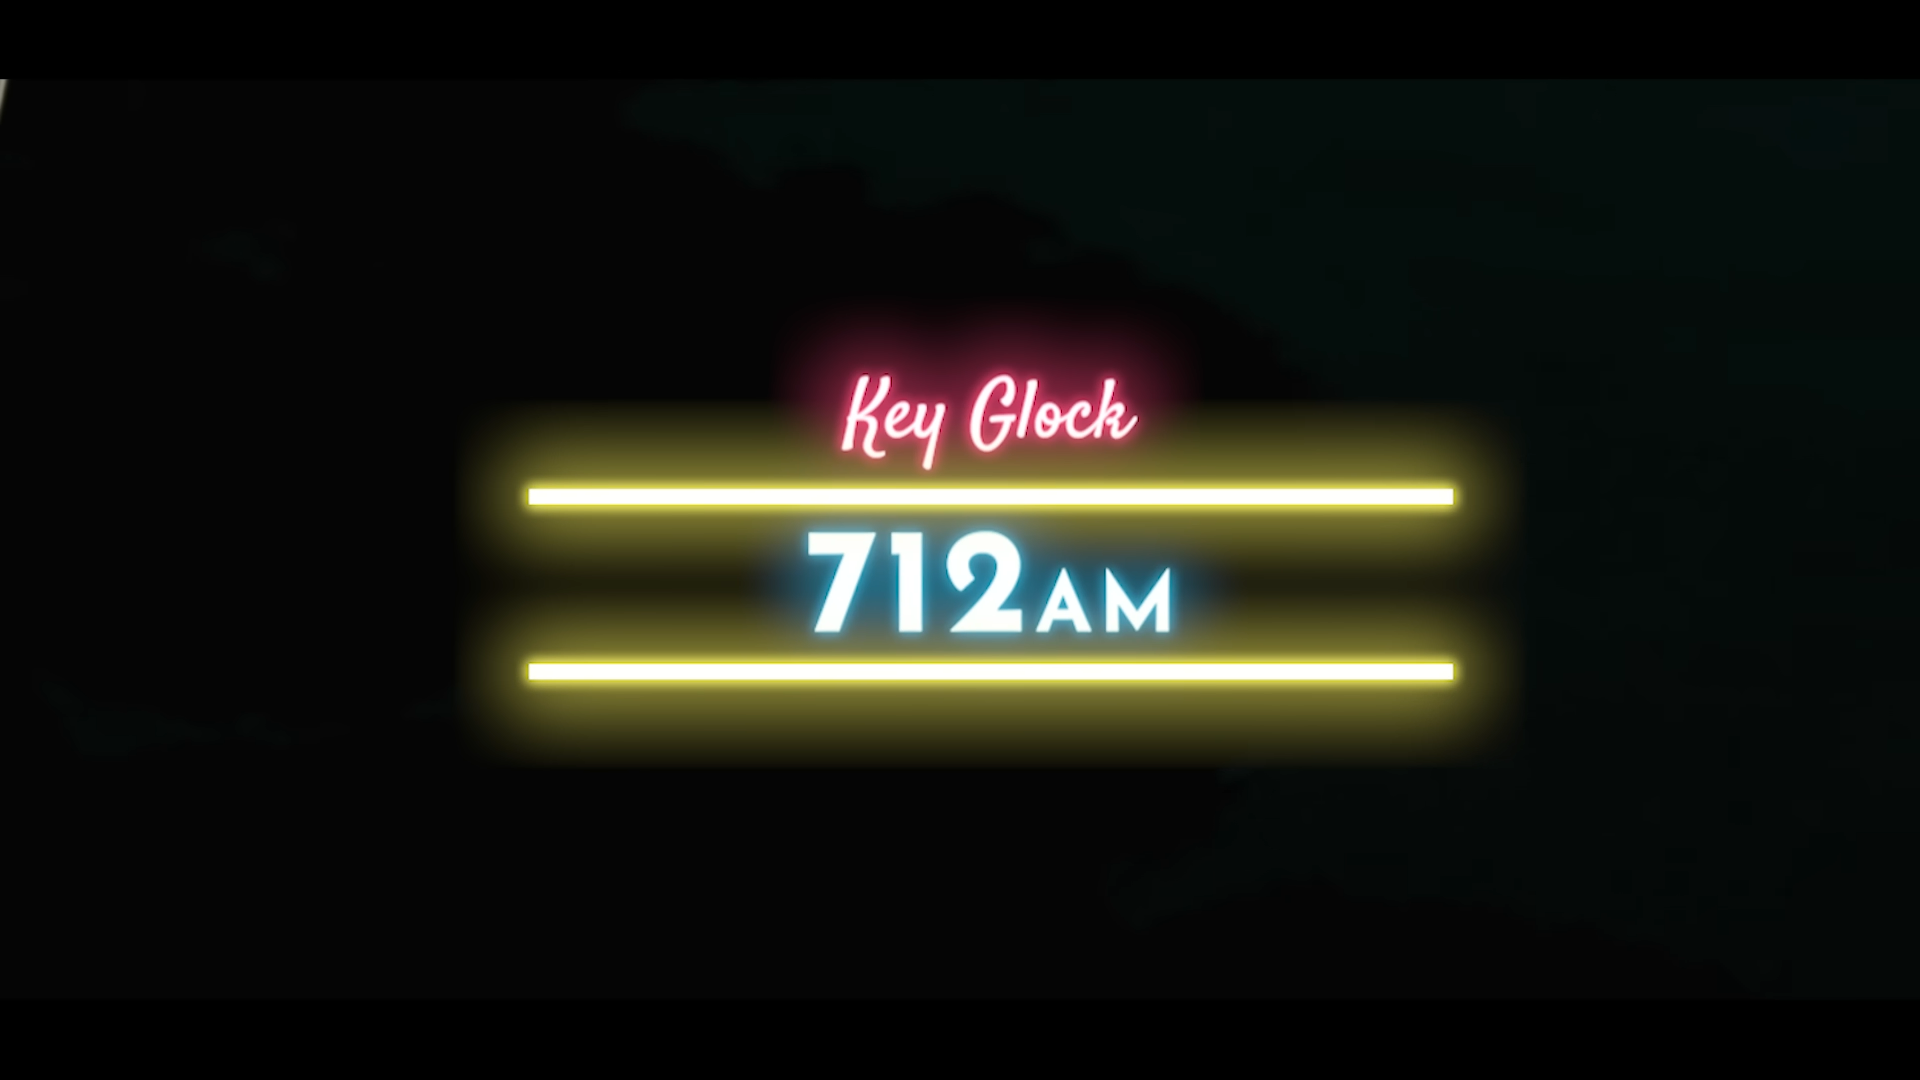 [WATCH] Key Glock Releases 